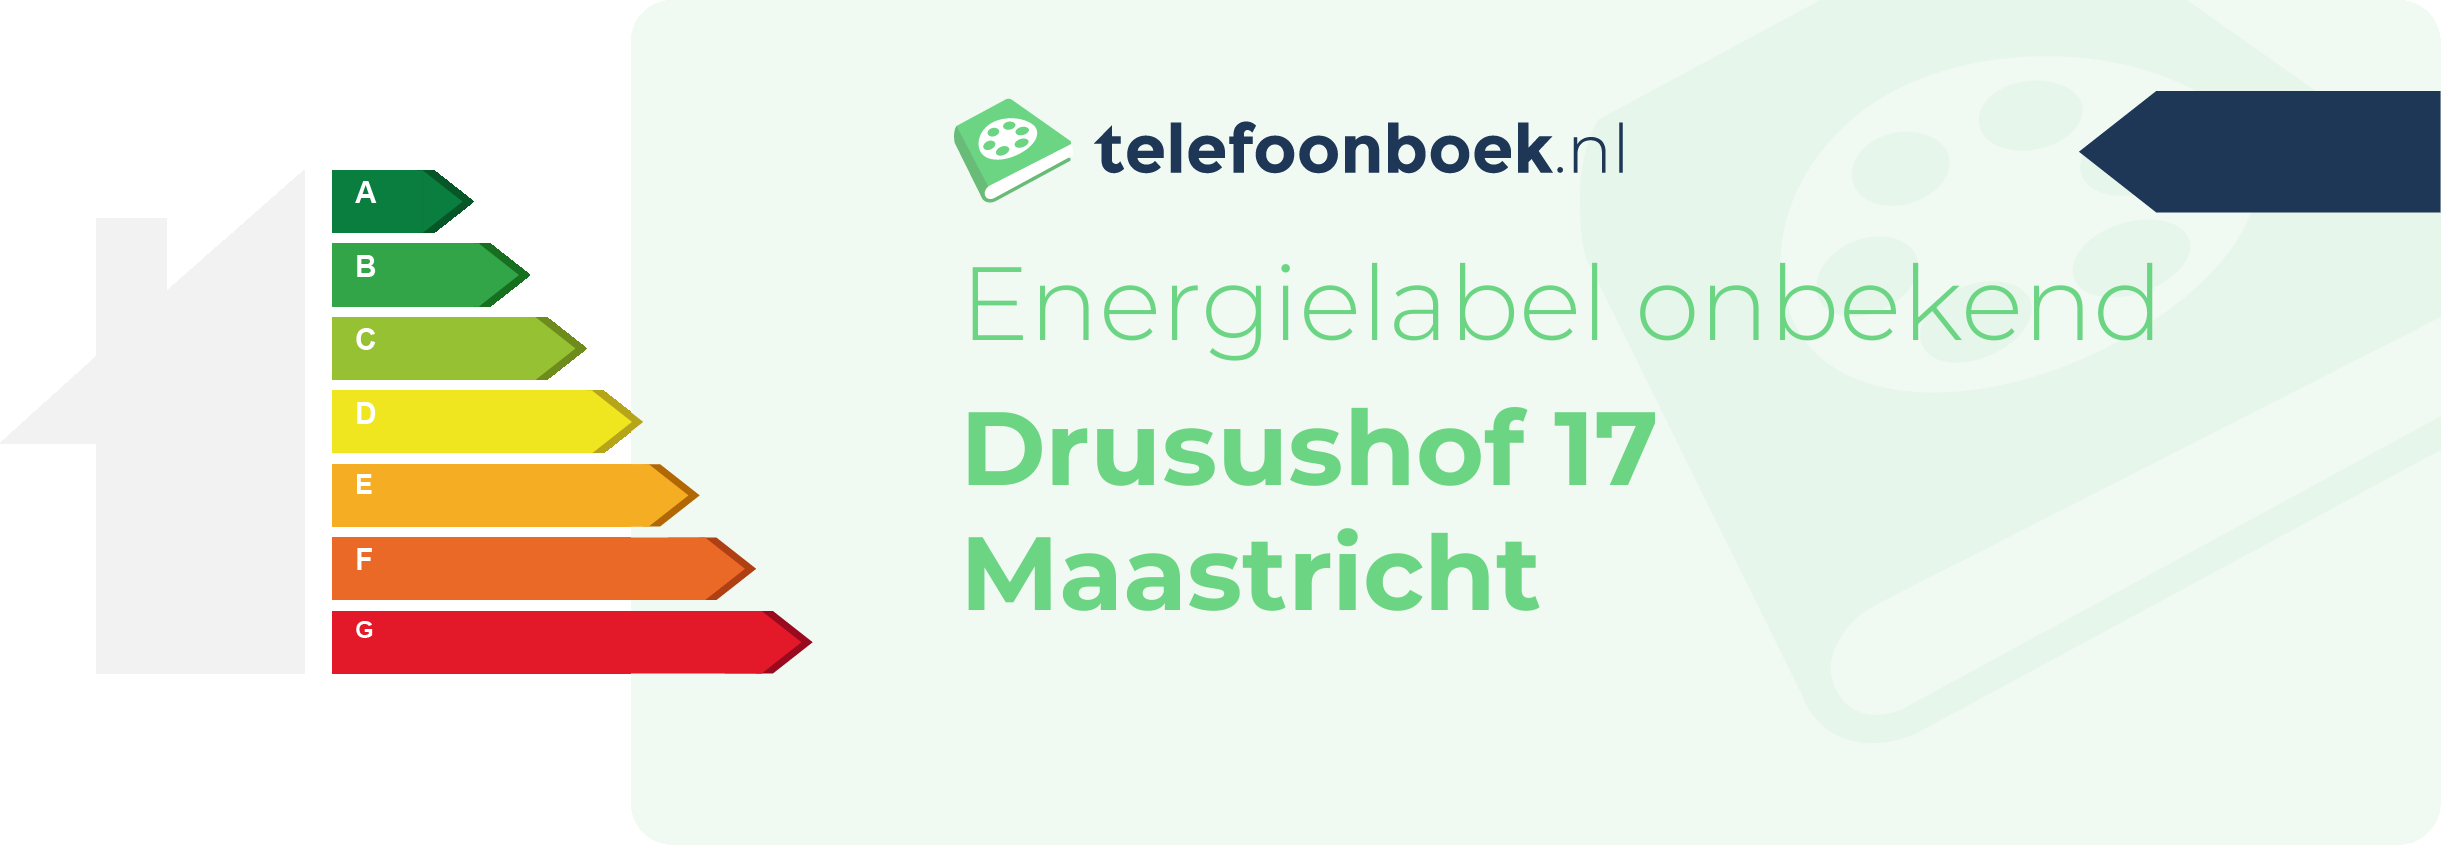 Energielabel Drusushof 17 Maastricht